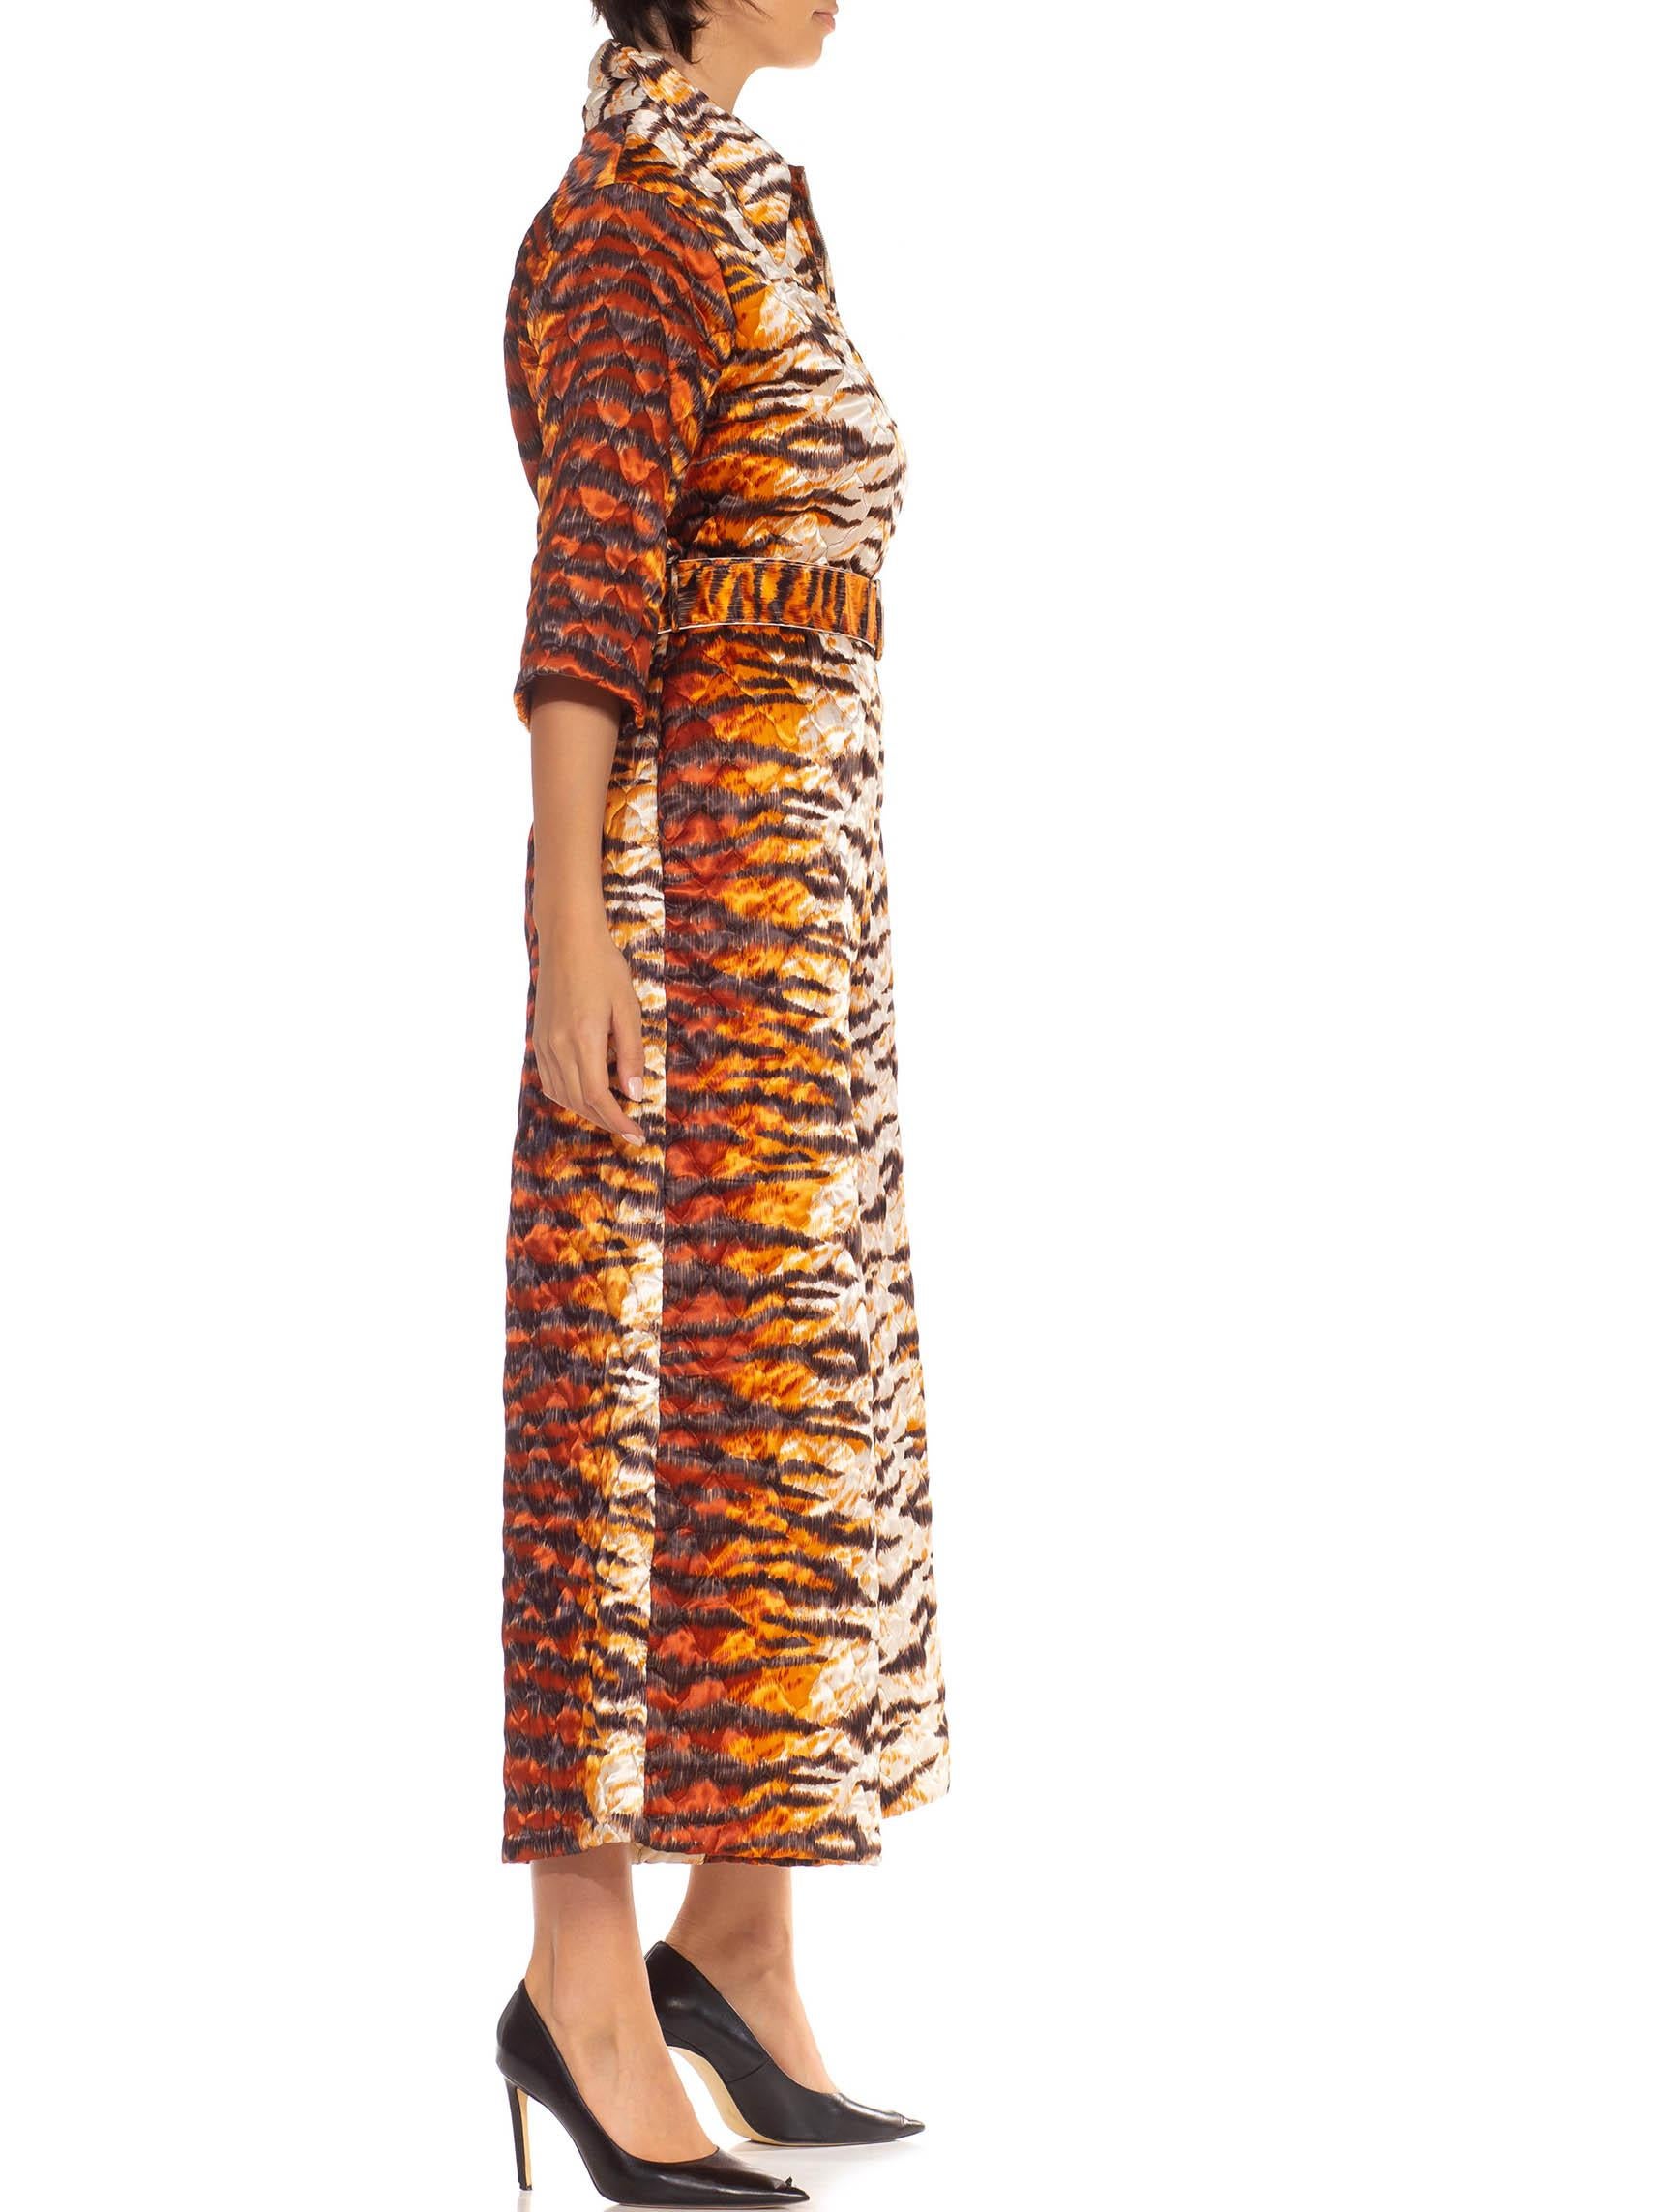 Marron Combinaison matelassée en polyester mélangé imprimé tigre orange et blanc des années 1970 en vente